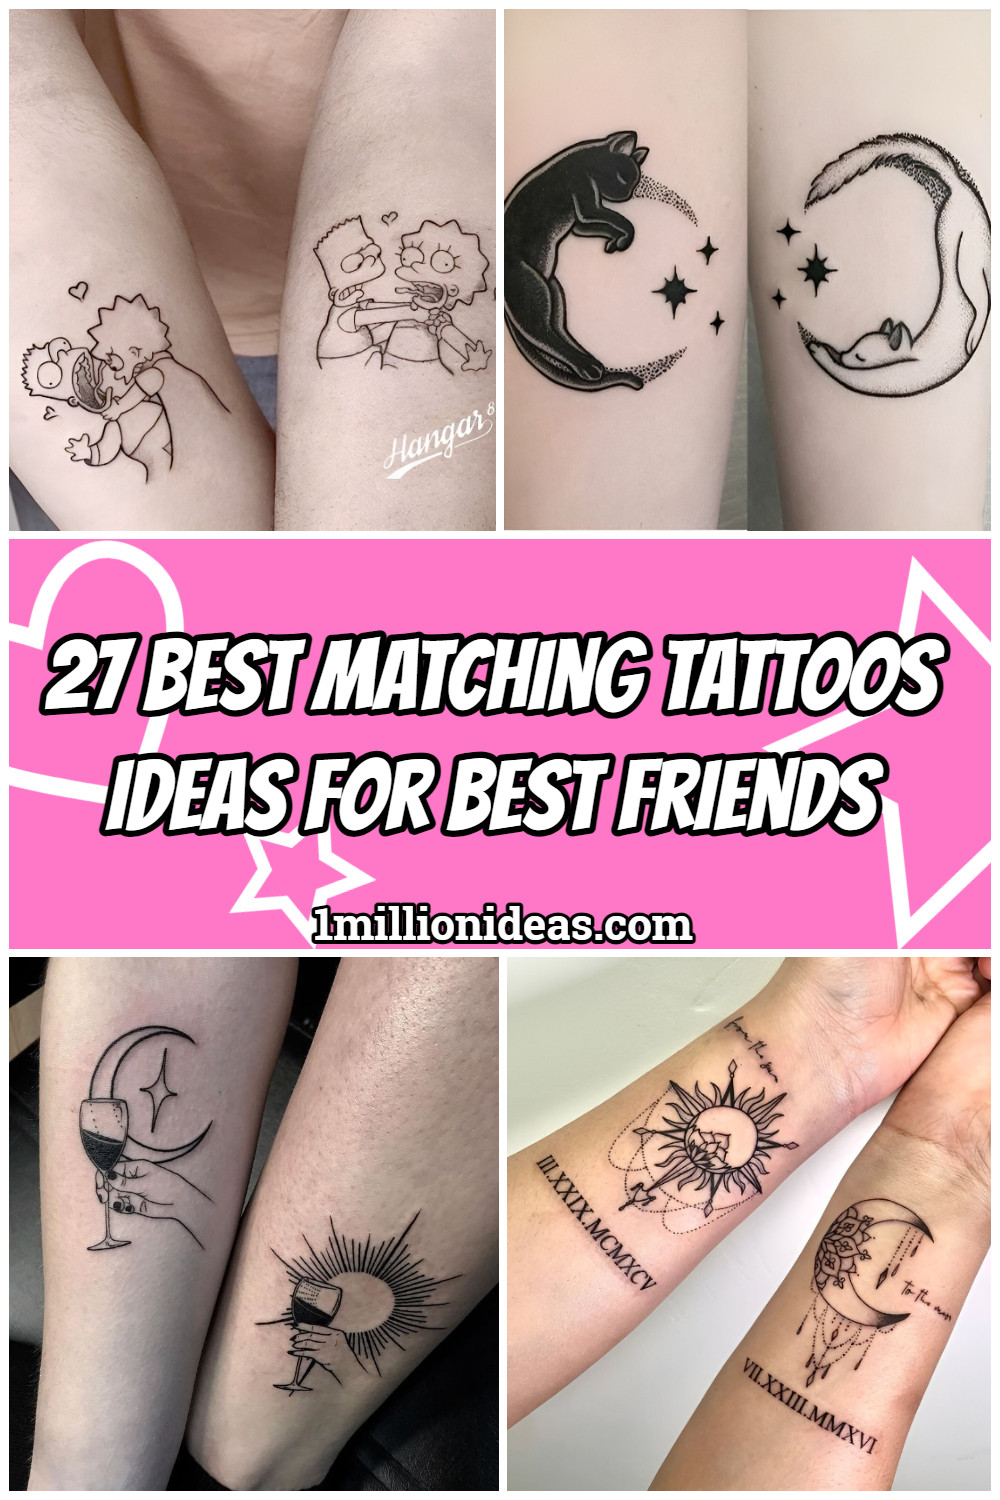 27 Best Matching Tattoos Ideas For Best Friends - 173